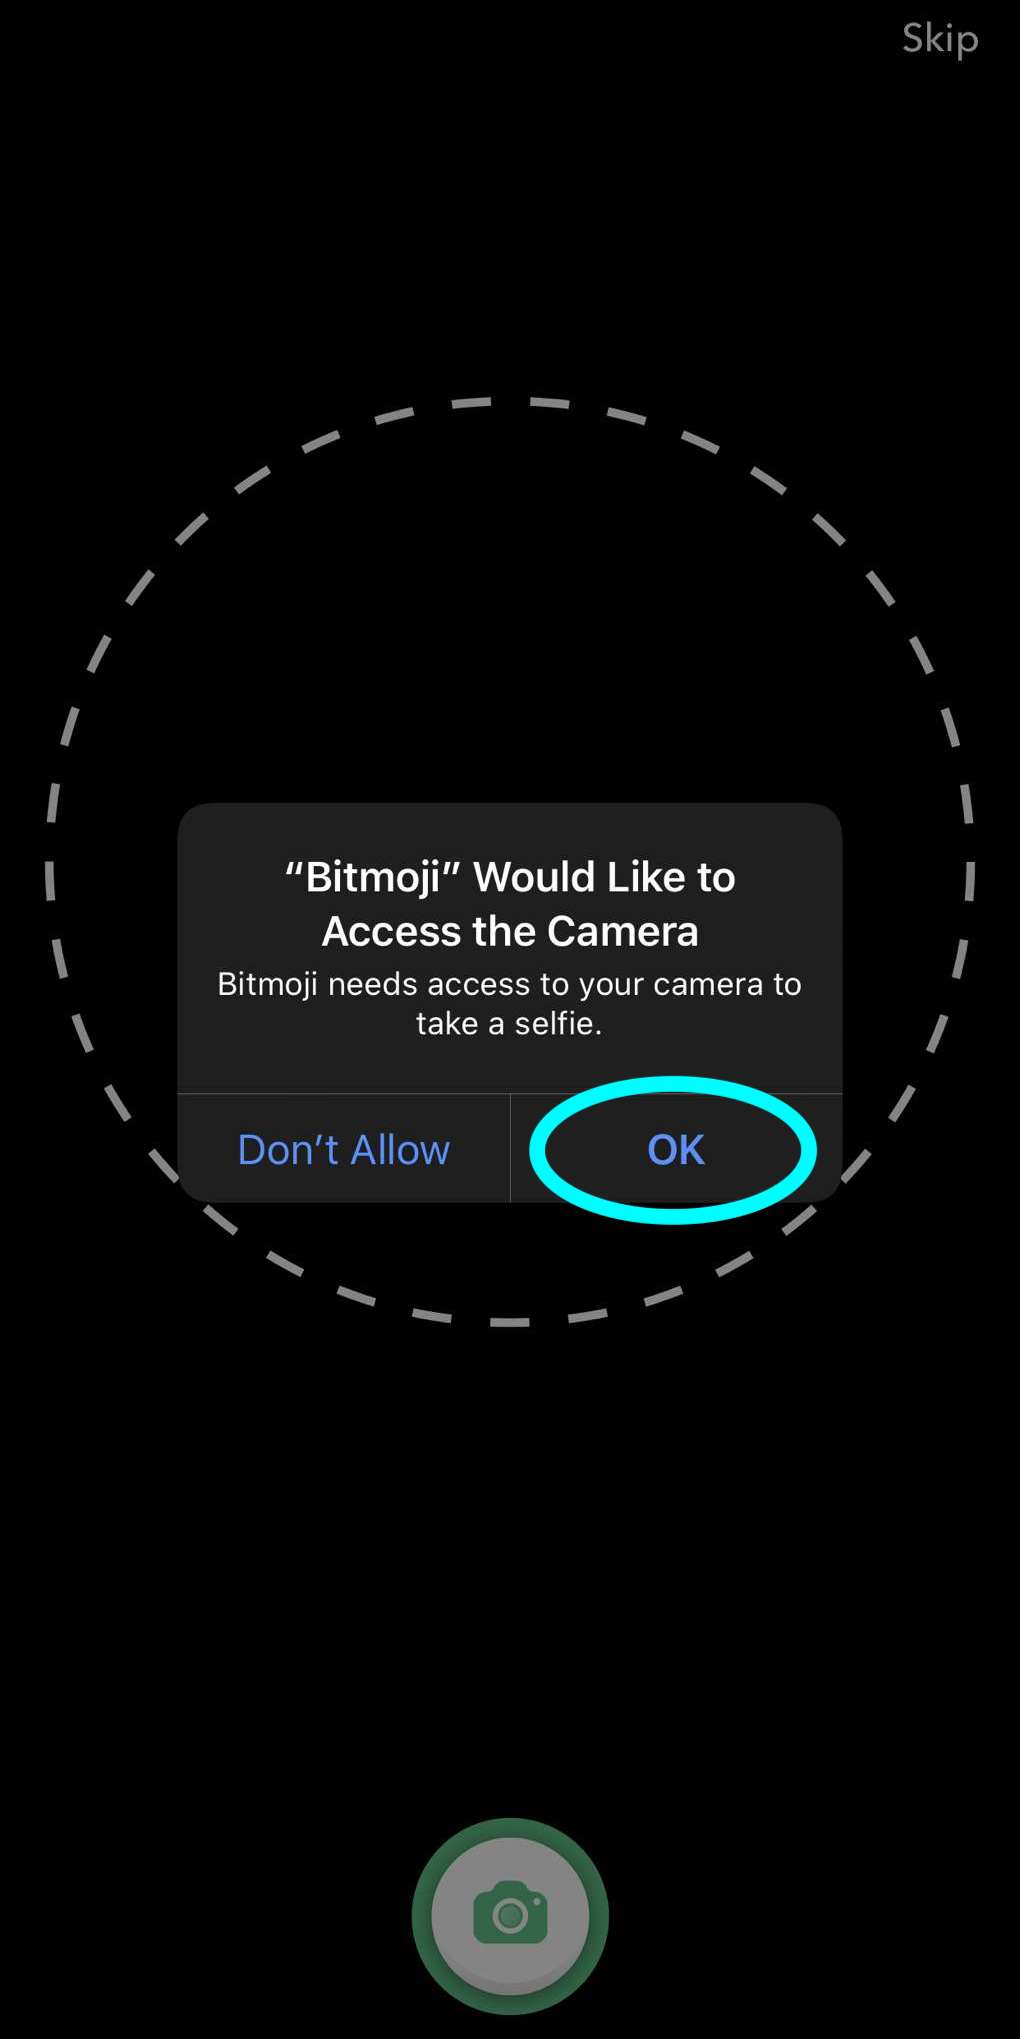 une fenêtre contextuelle pour autoriser Bitmoji à accéder à la caméra, le bouton OK pour autoriser l'accès est mis en évidence